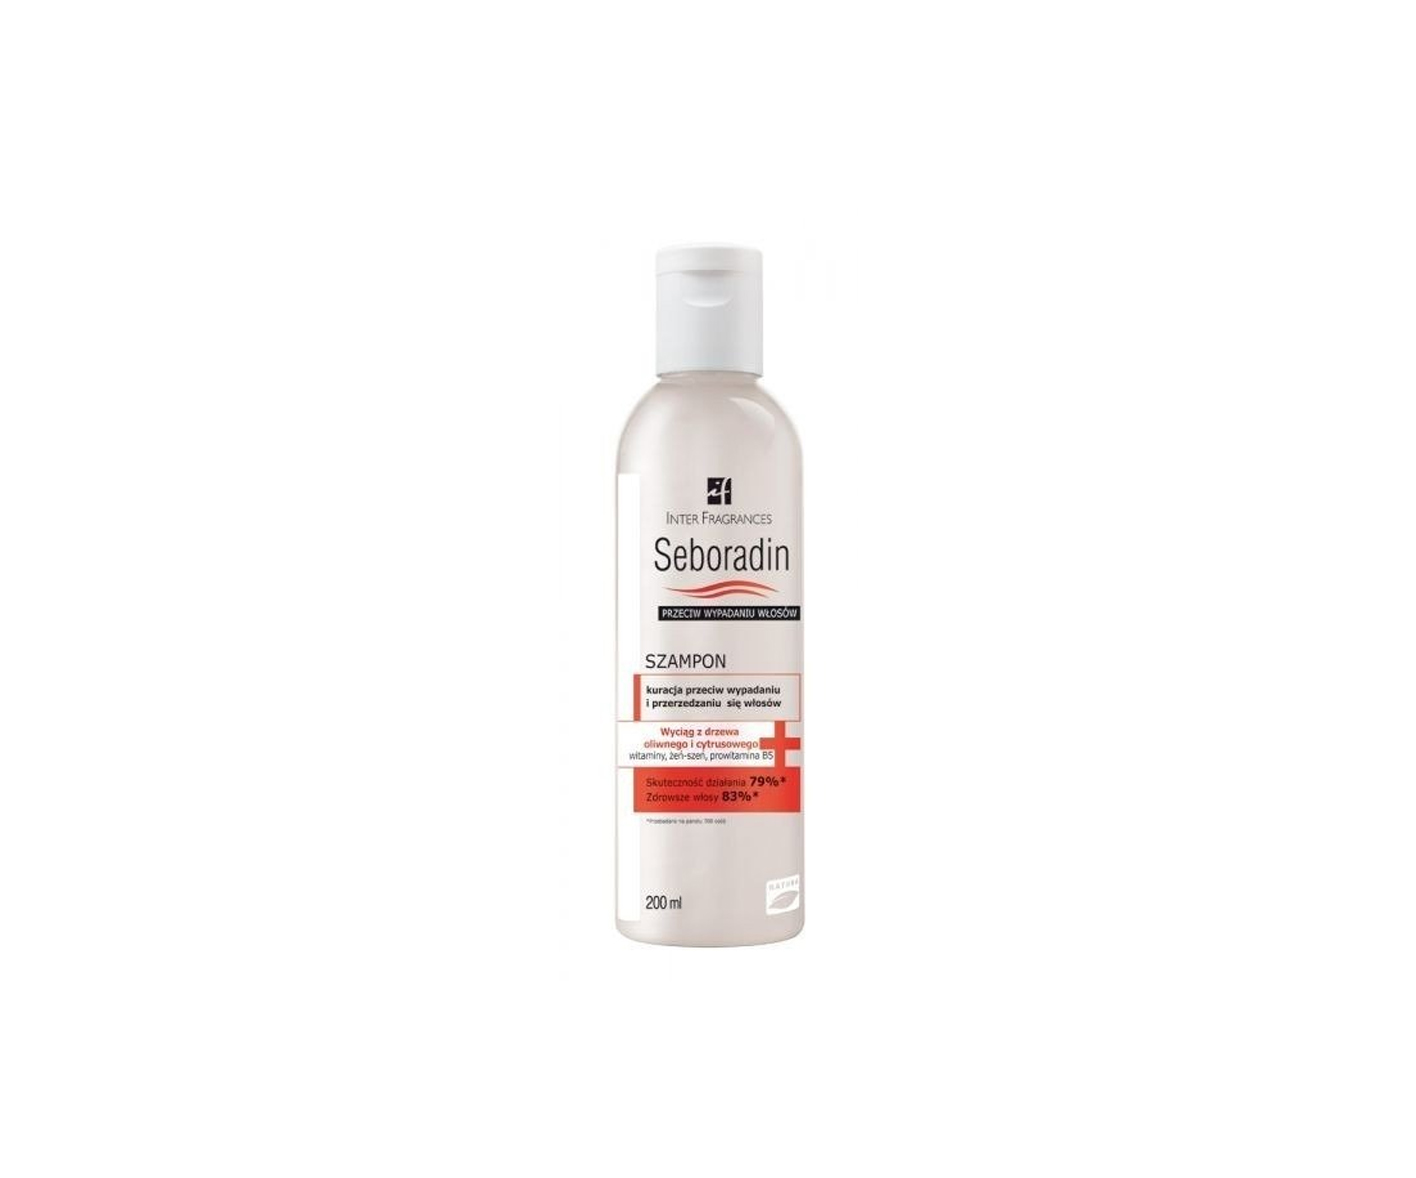 Seboradin, Shampoo - Behandlung gegen Haarausfall und Ausdünnung